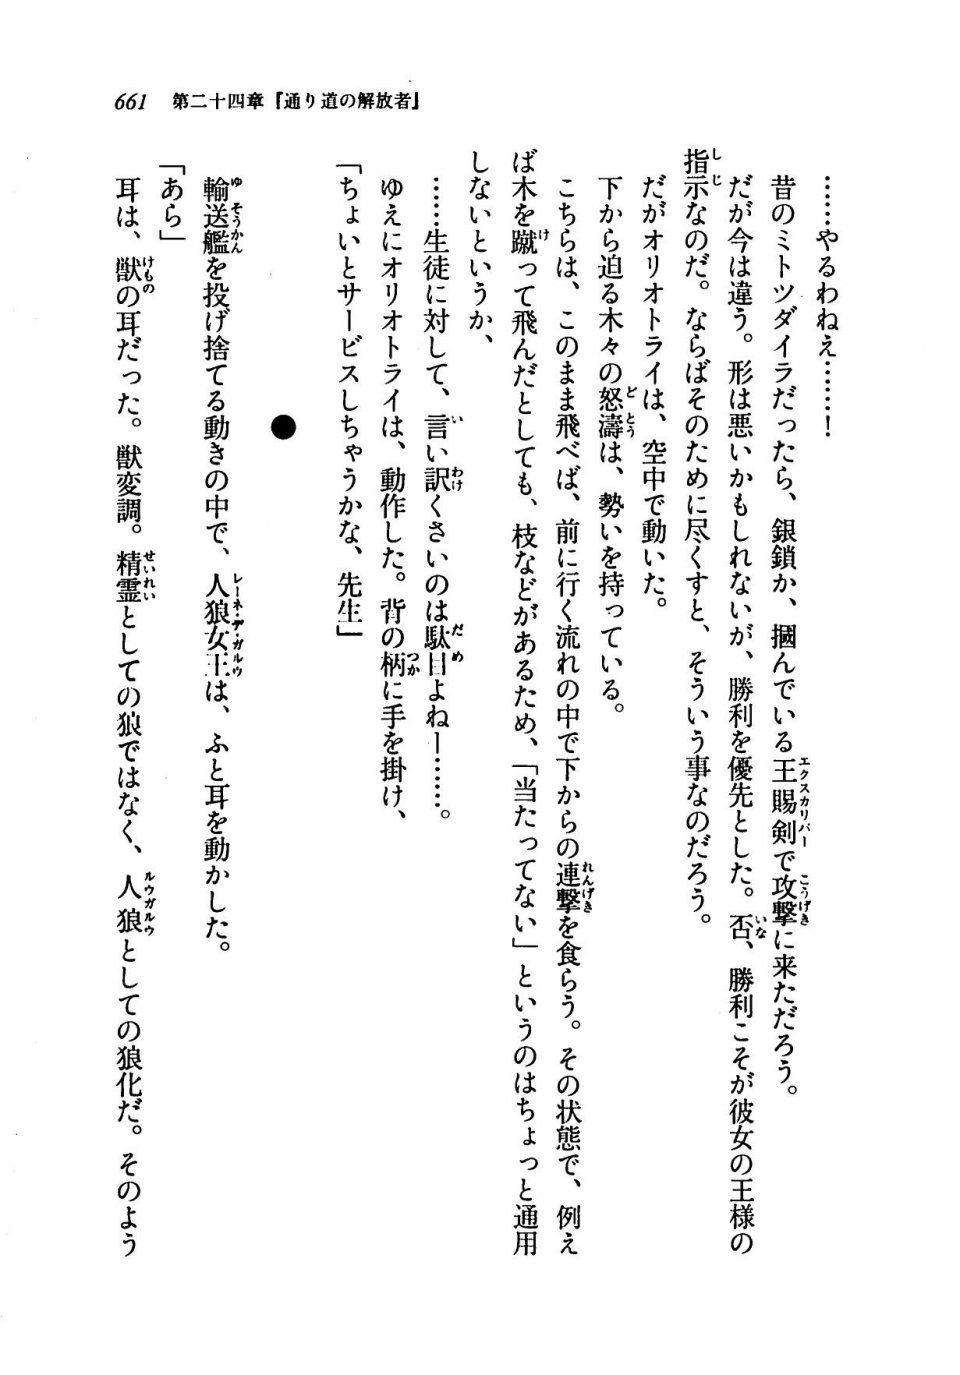 Kyoukai Senjou no Horizon LN Vol 19(8A) - Photo #661